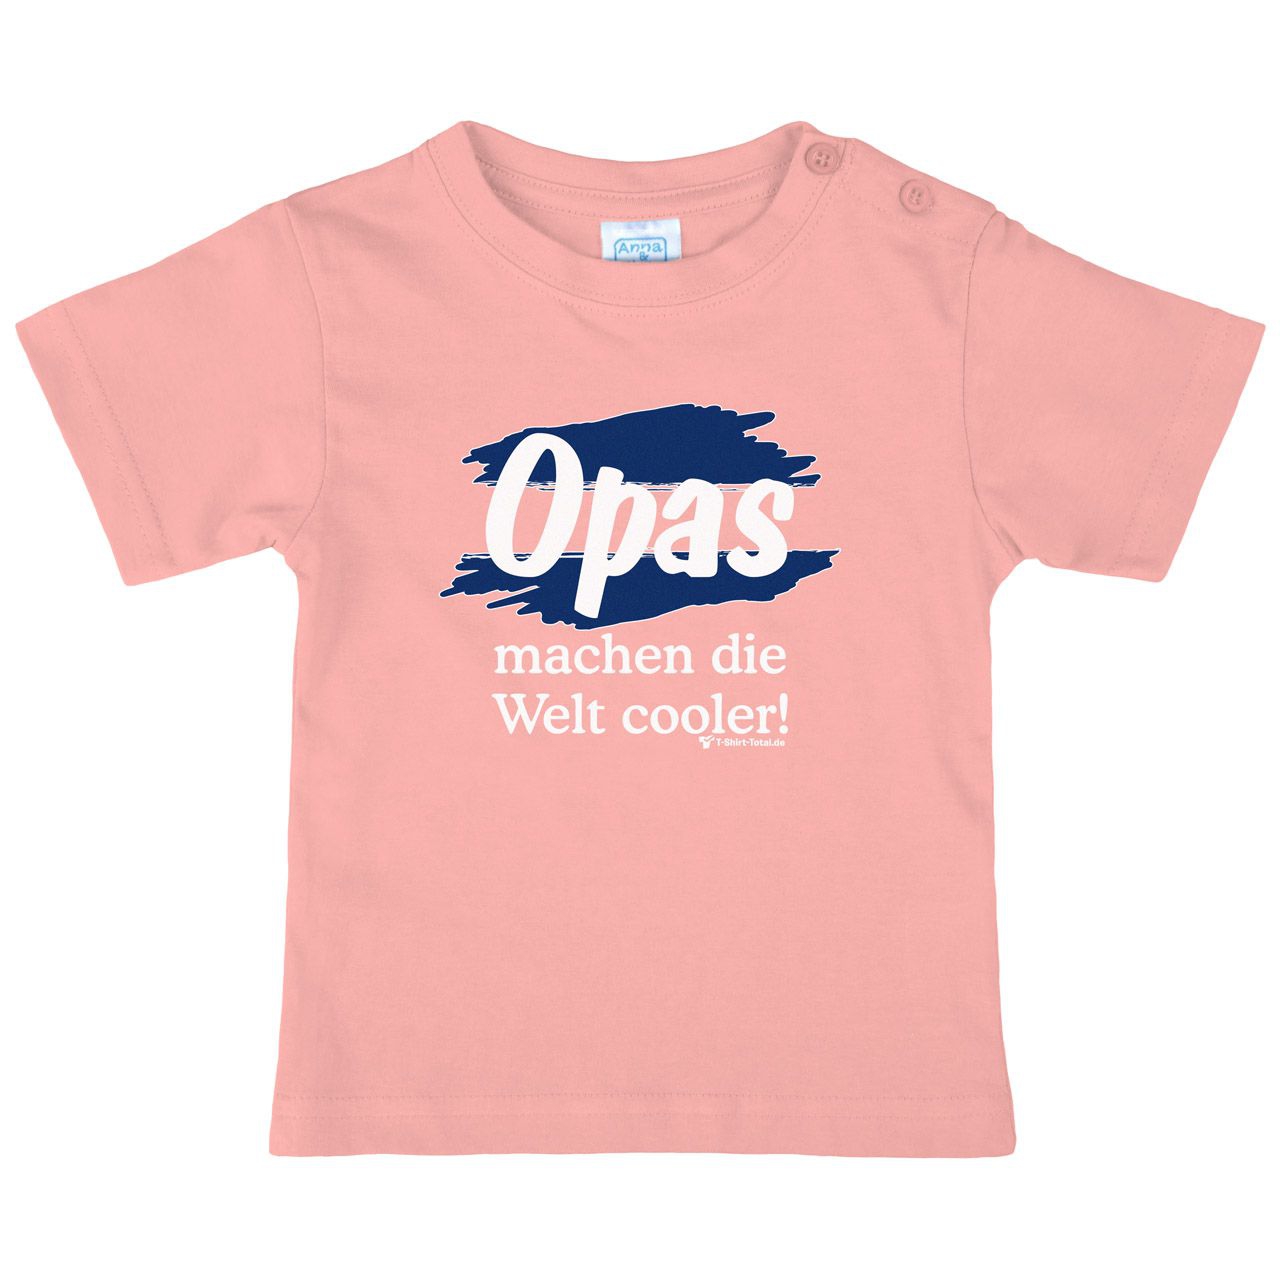 Welt cooler Opa Kinder T-Shirt rosa 92